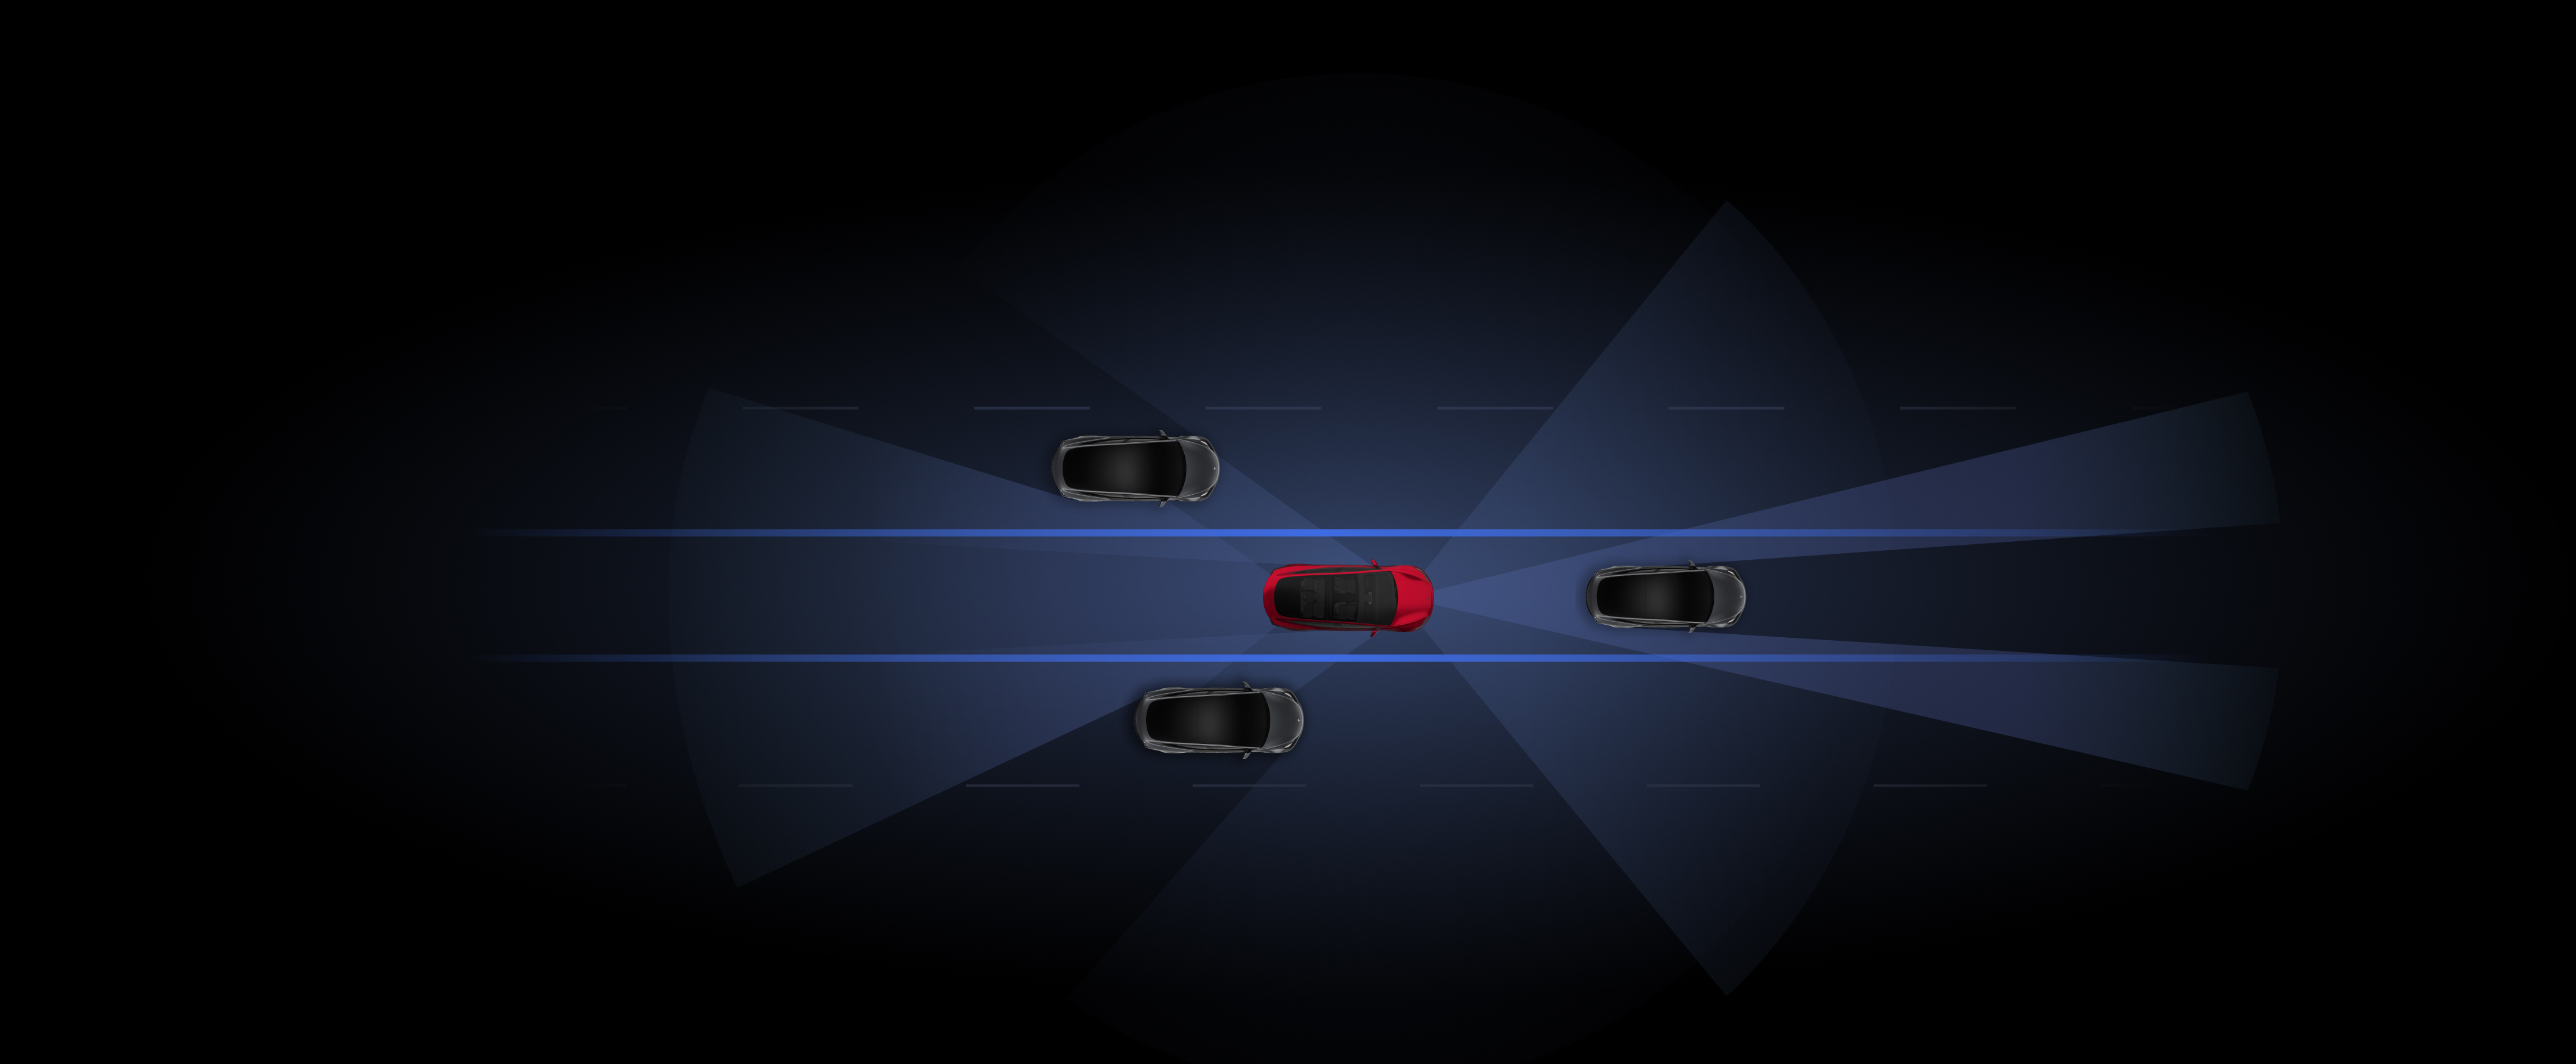 使用 Autopilot 自动辅助驾驶功能的灰色和红色 Tesla 车辆的视觉效果渲染图。 